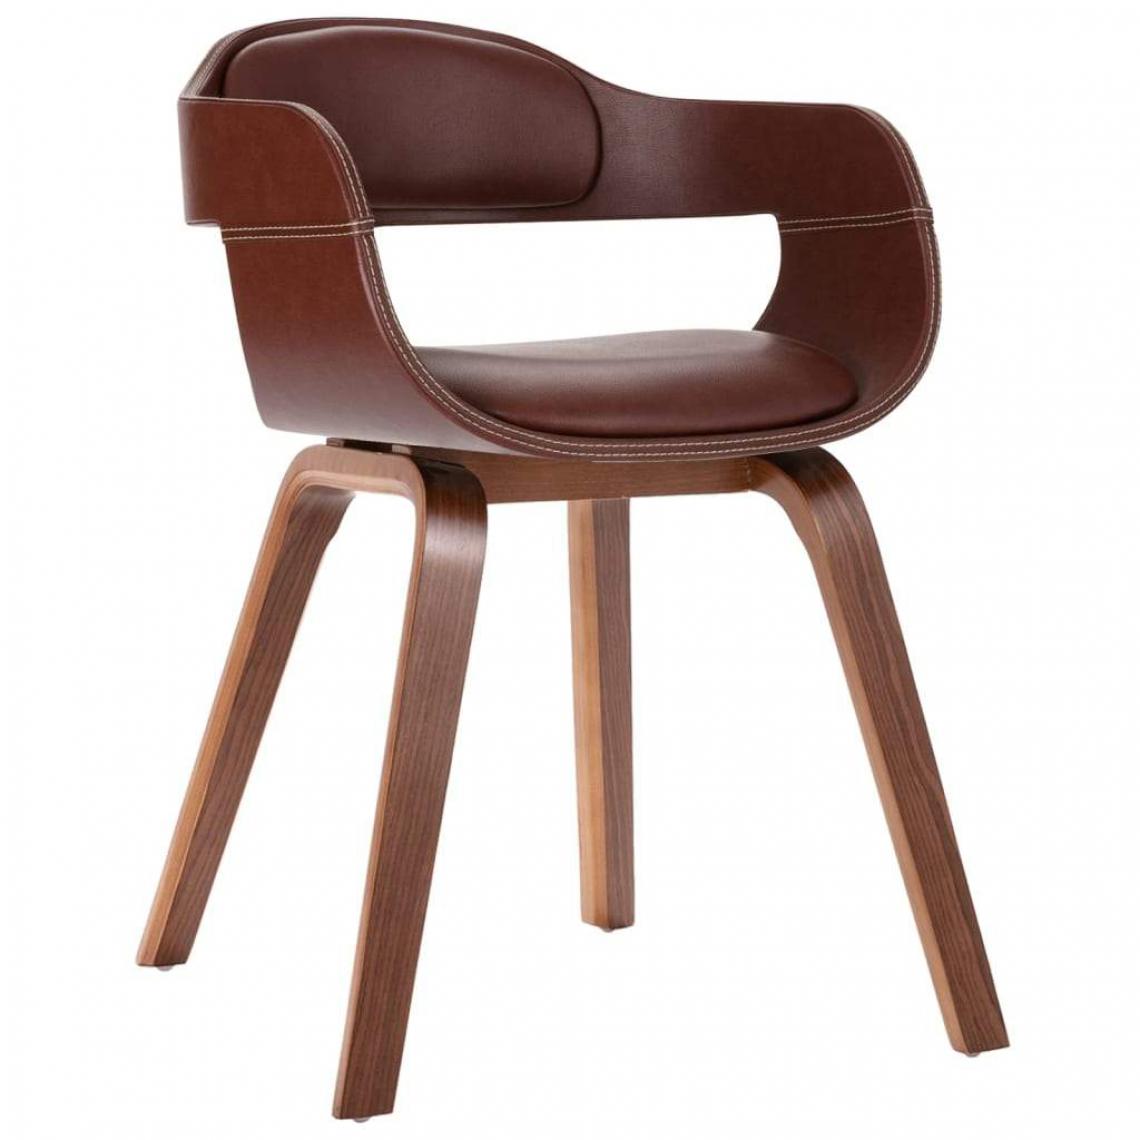 Decoshop26 - Chaise de salle à manger design moderne bois courbé et similicuir marron CDS020049 - Chaises